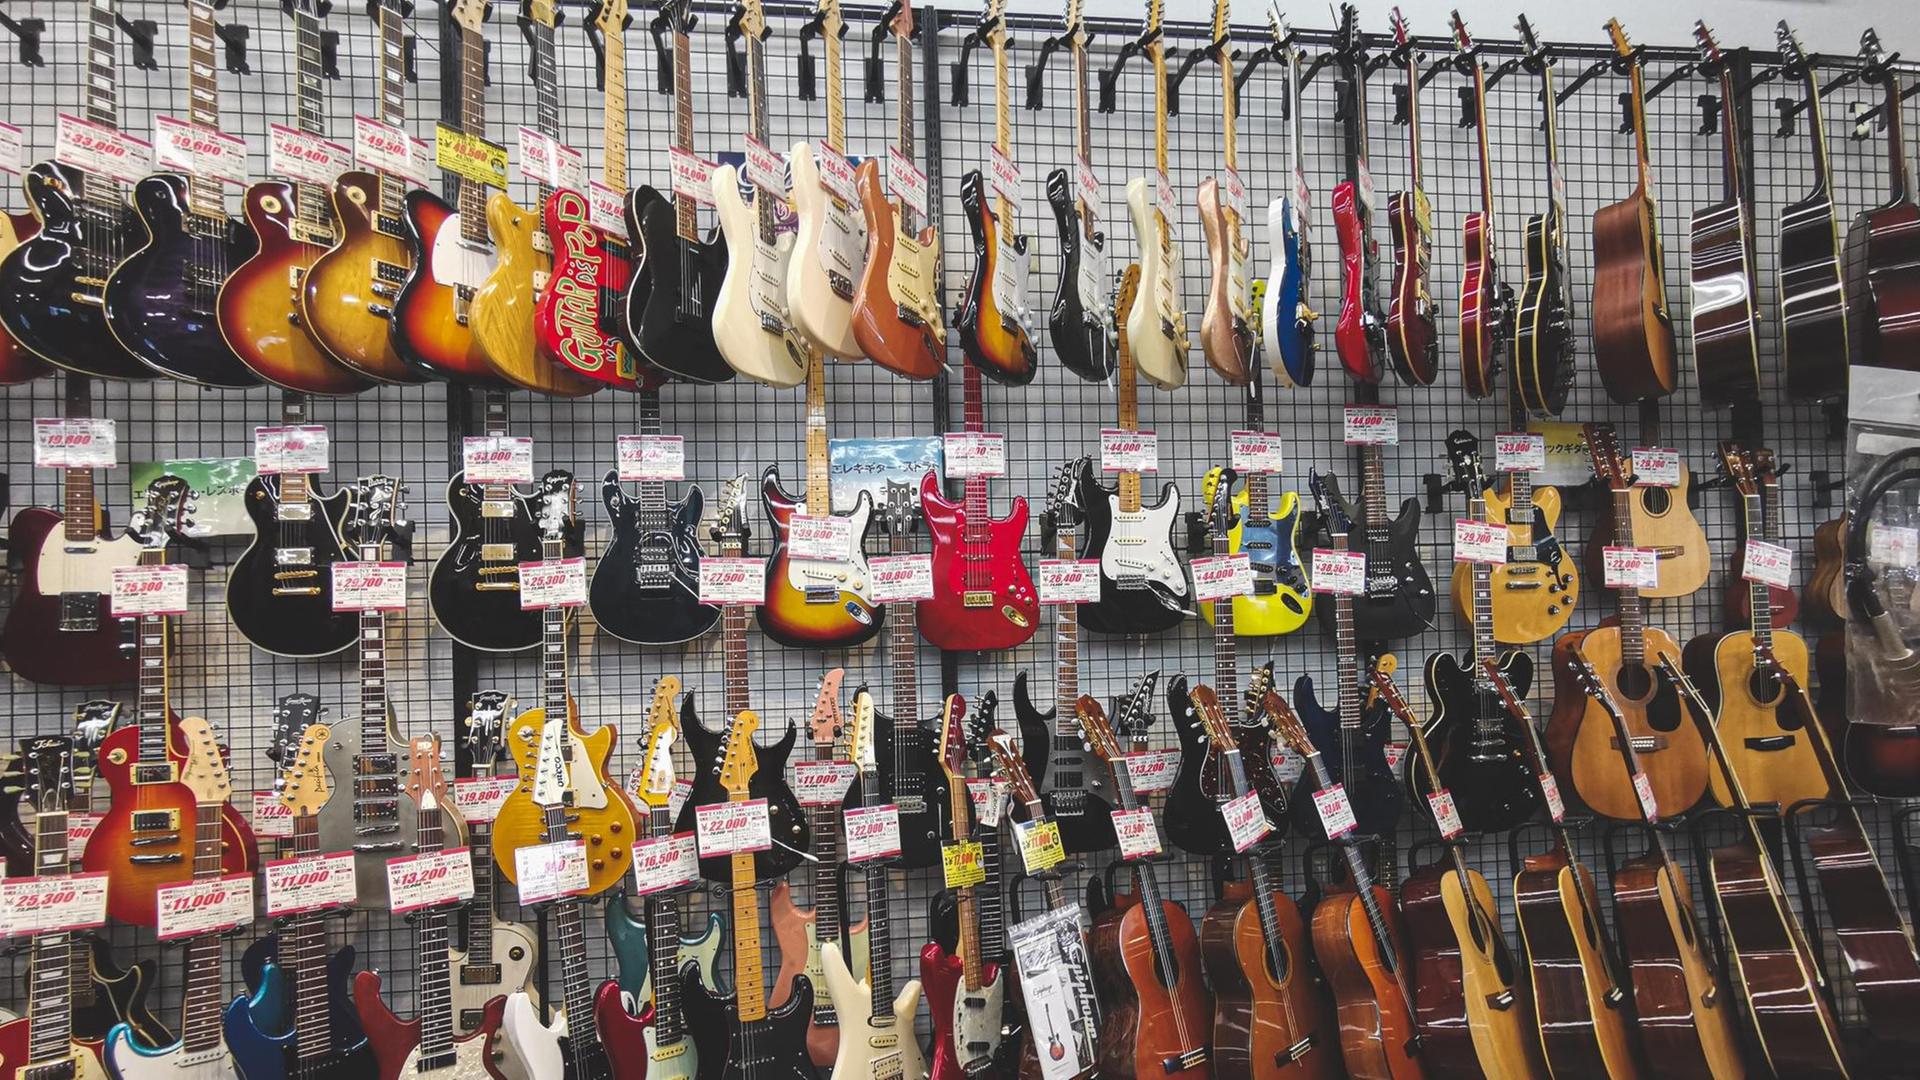 Gitarren hängen in einem Musikgeschäft in mehreren Reihen an der Wand